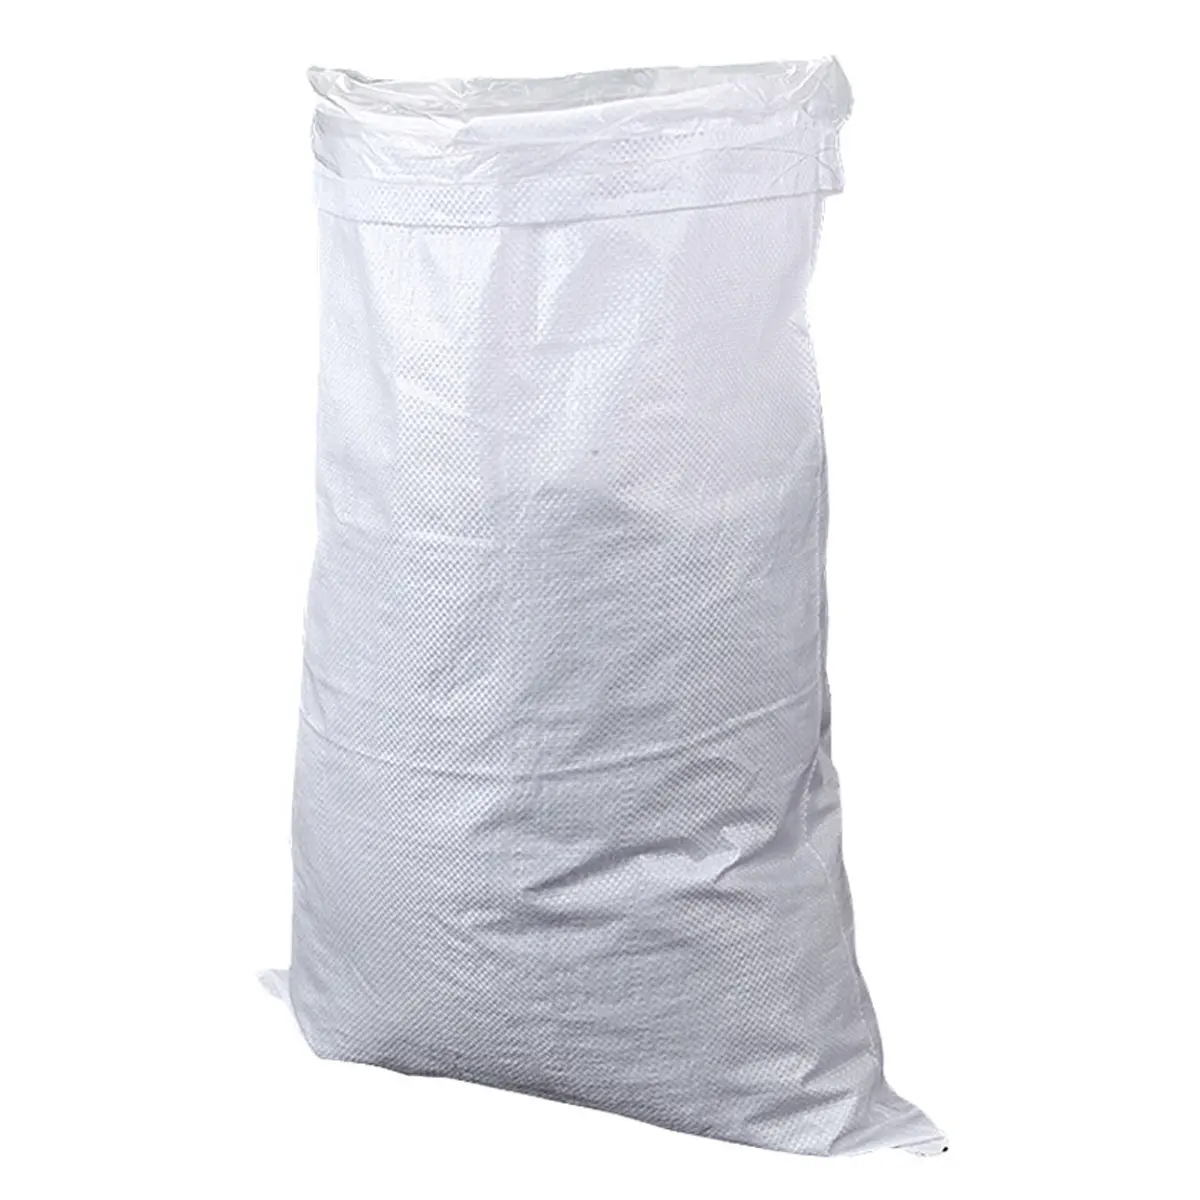 Sacos de bolsas de tejido PP blanco, 60x90cm, 50kg, reciclables, vacíos, para fertilizante, harina, arroz, alimento para animales, fruta, comida, arena